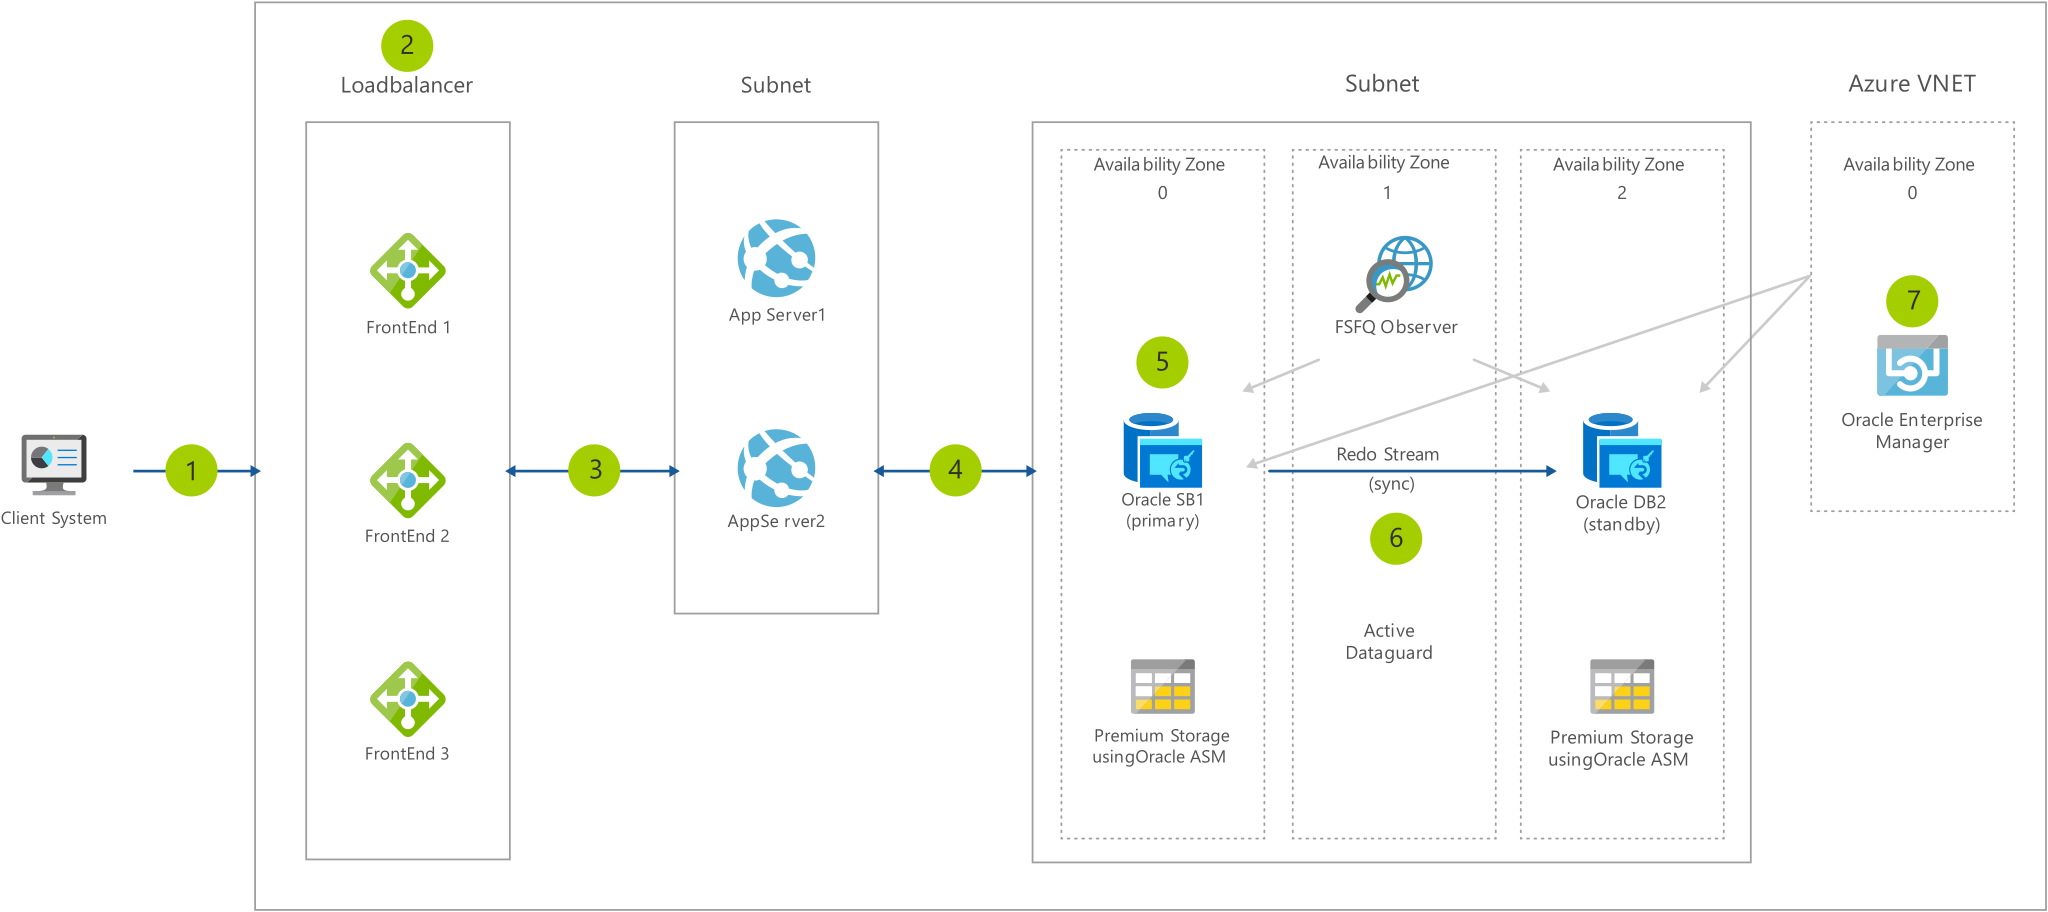 Схема архитектуры: от клиента через подсистему балансировки нагрузки и подсети к Azure V NET.